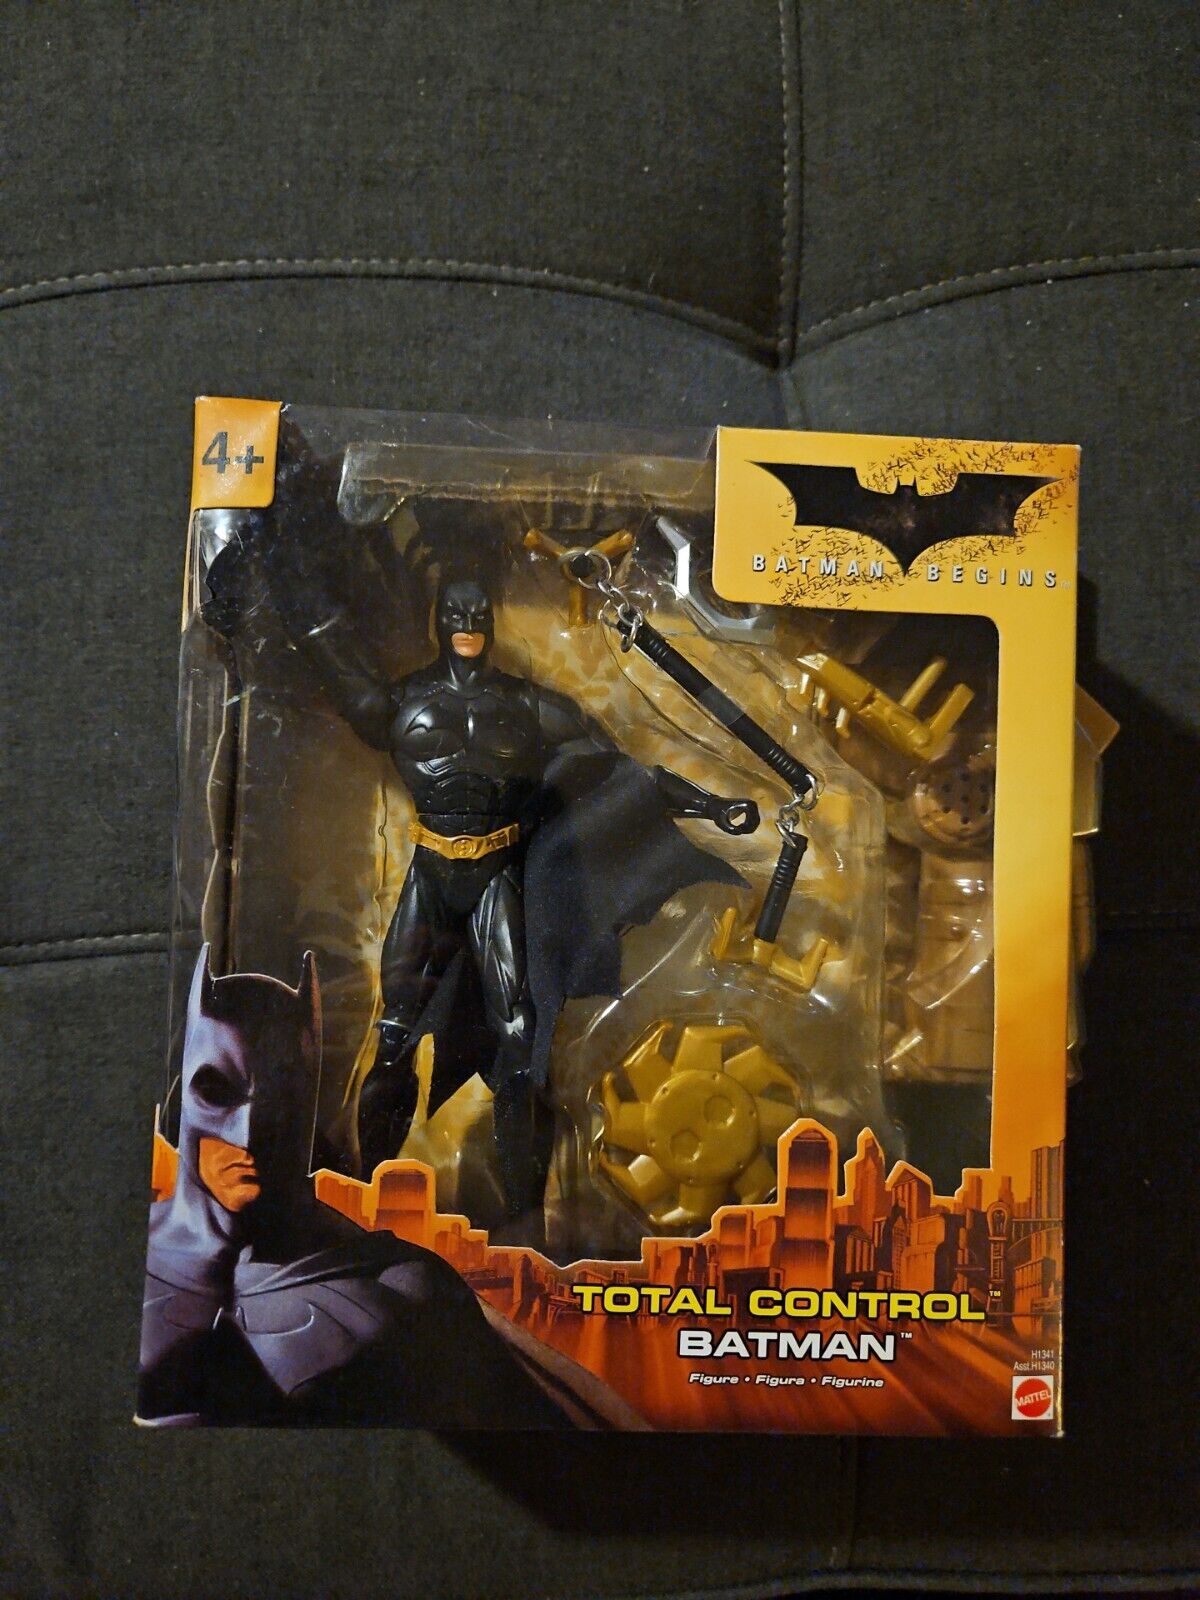 Batman Begins Total Control Batman Action Figure W/Accessories